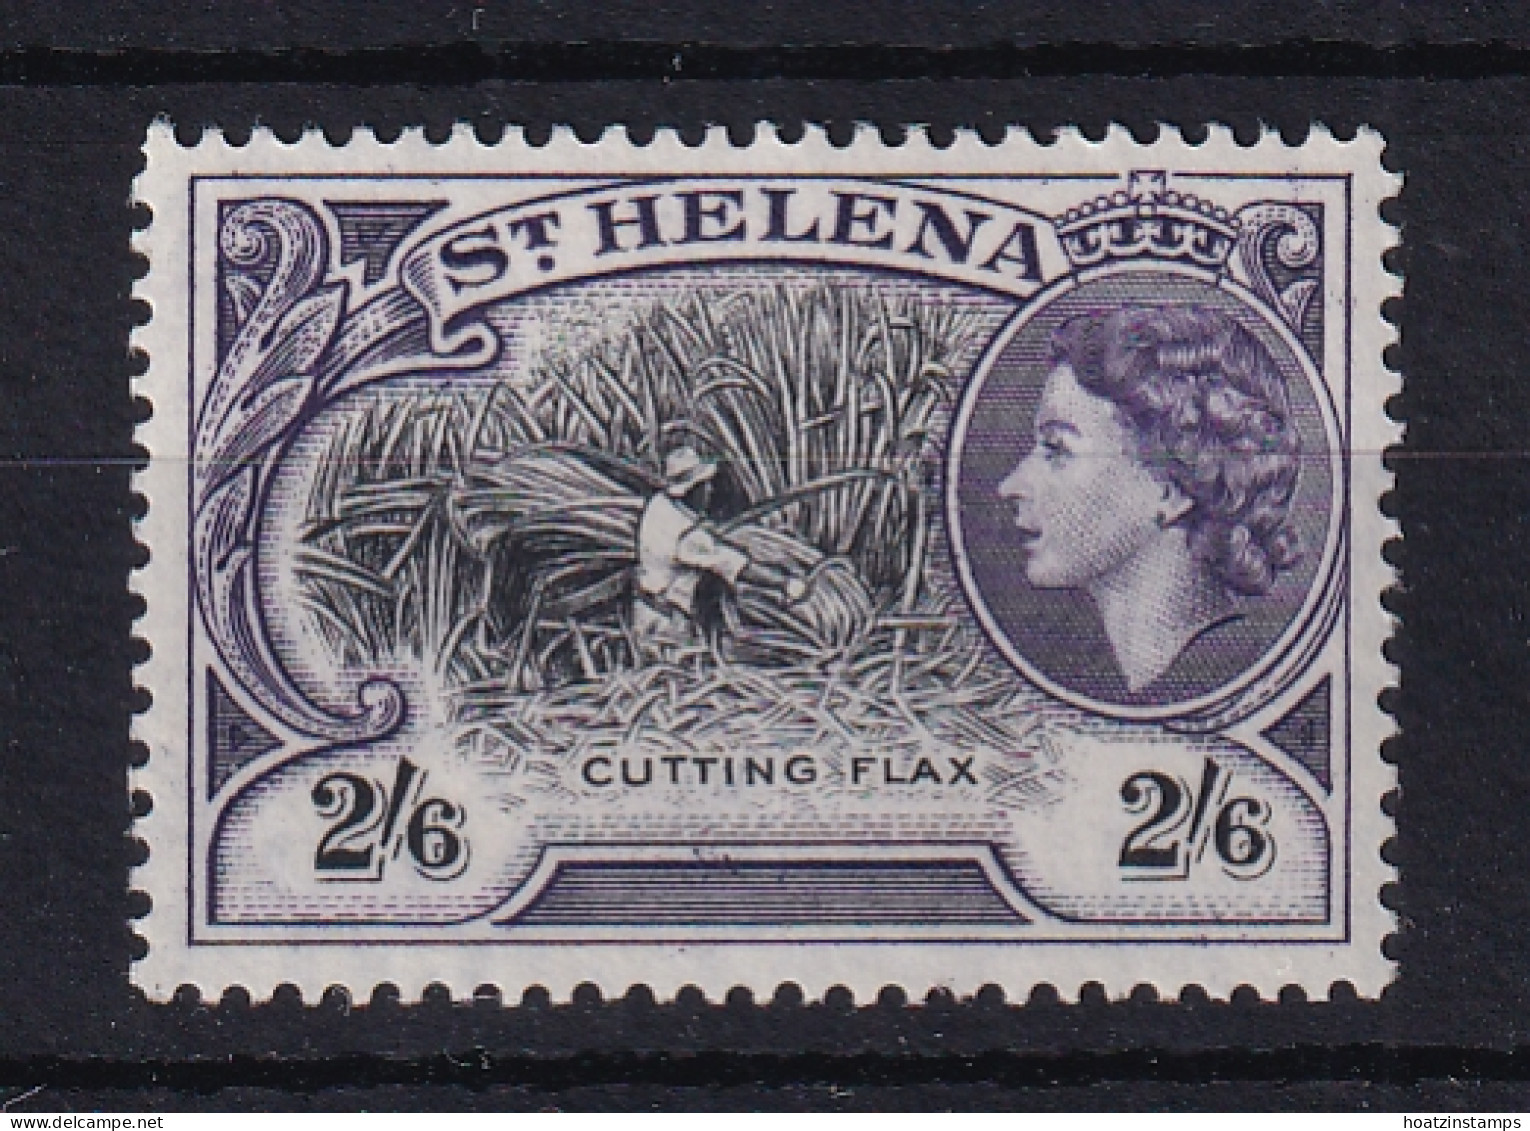 St Helena: 1953/59   QE II - Pictorial     SG163    2/6d       MH - Saint Helena Island